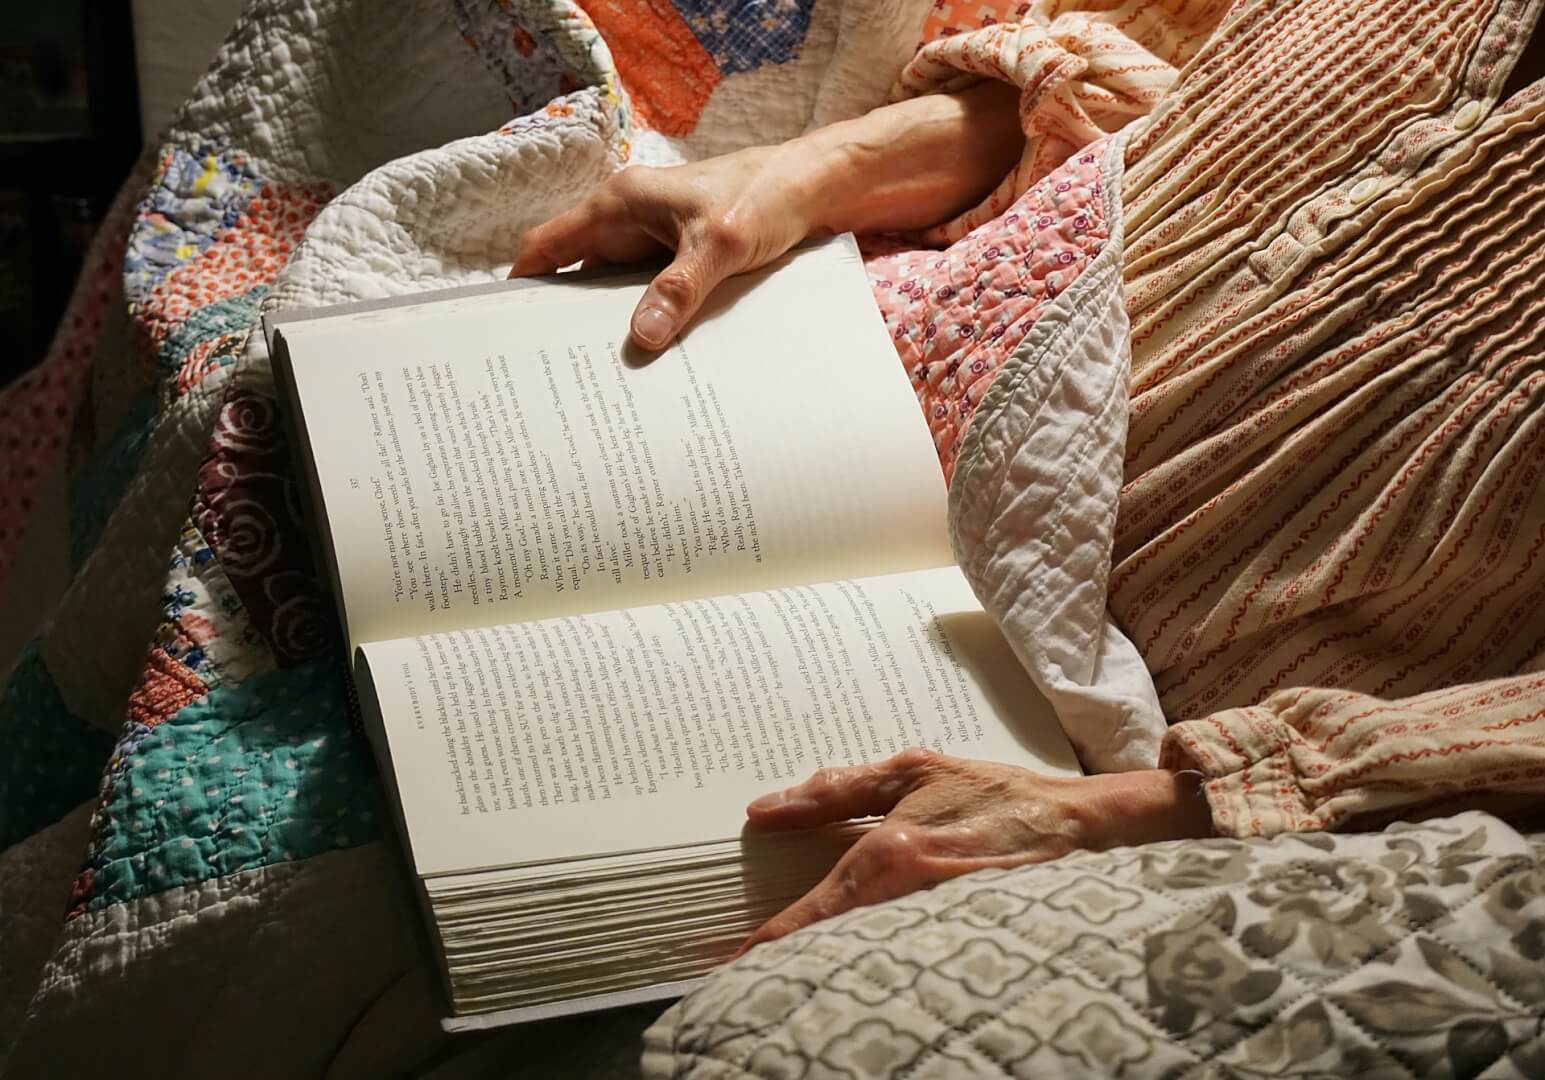 Una mujer mayor sujeta un libro con las manos en el sofá de su casa. La imagen muestra un plano corto de las manos sujetando el libro en un claro ejemplo de los beneficios que aporta la lectura en la tercera edad. 